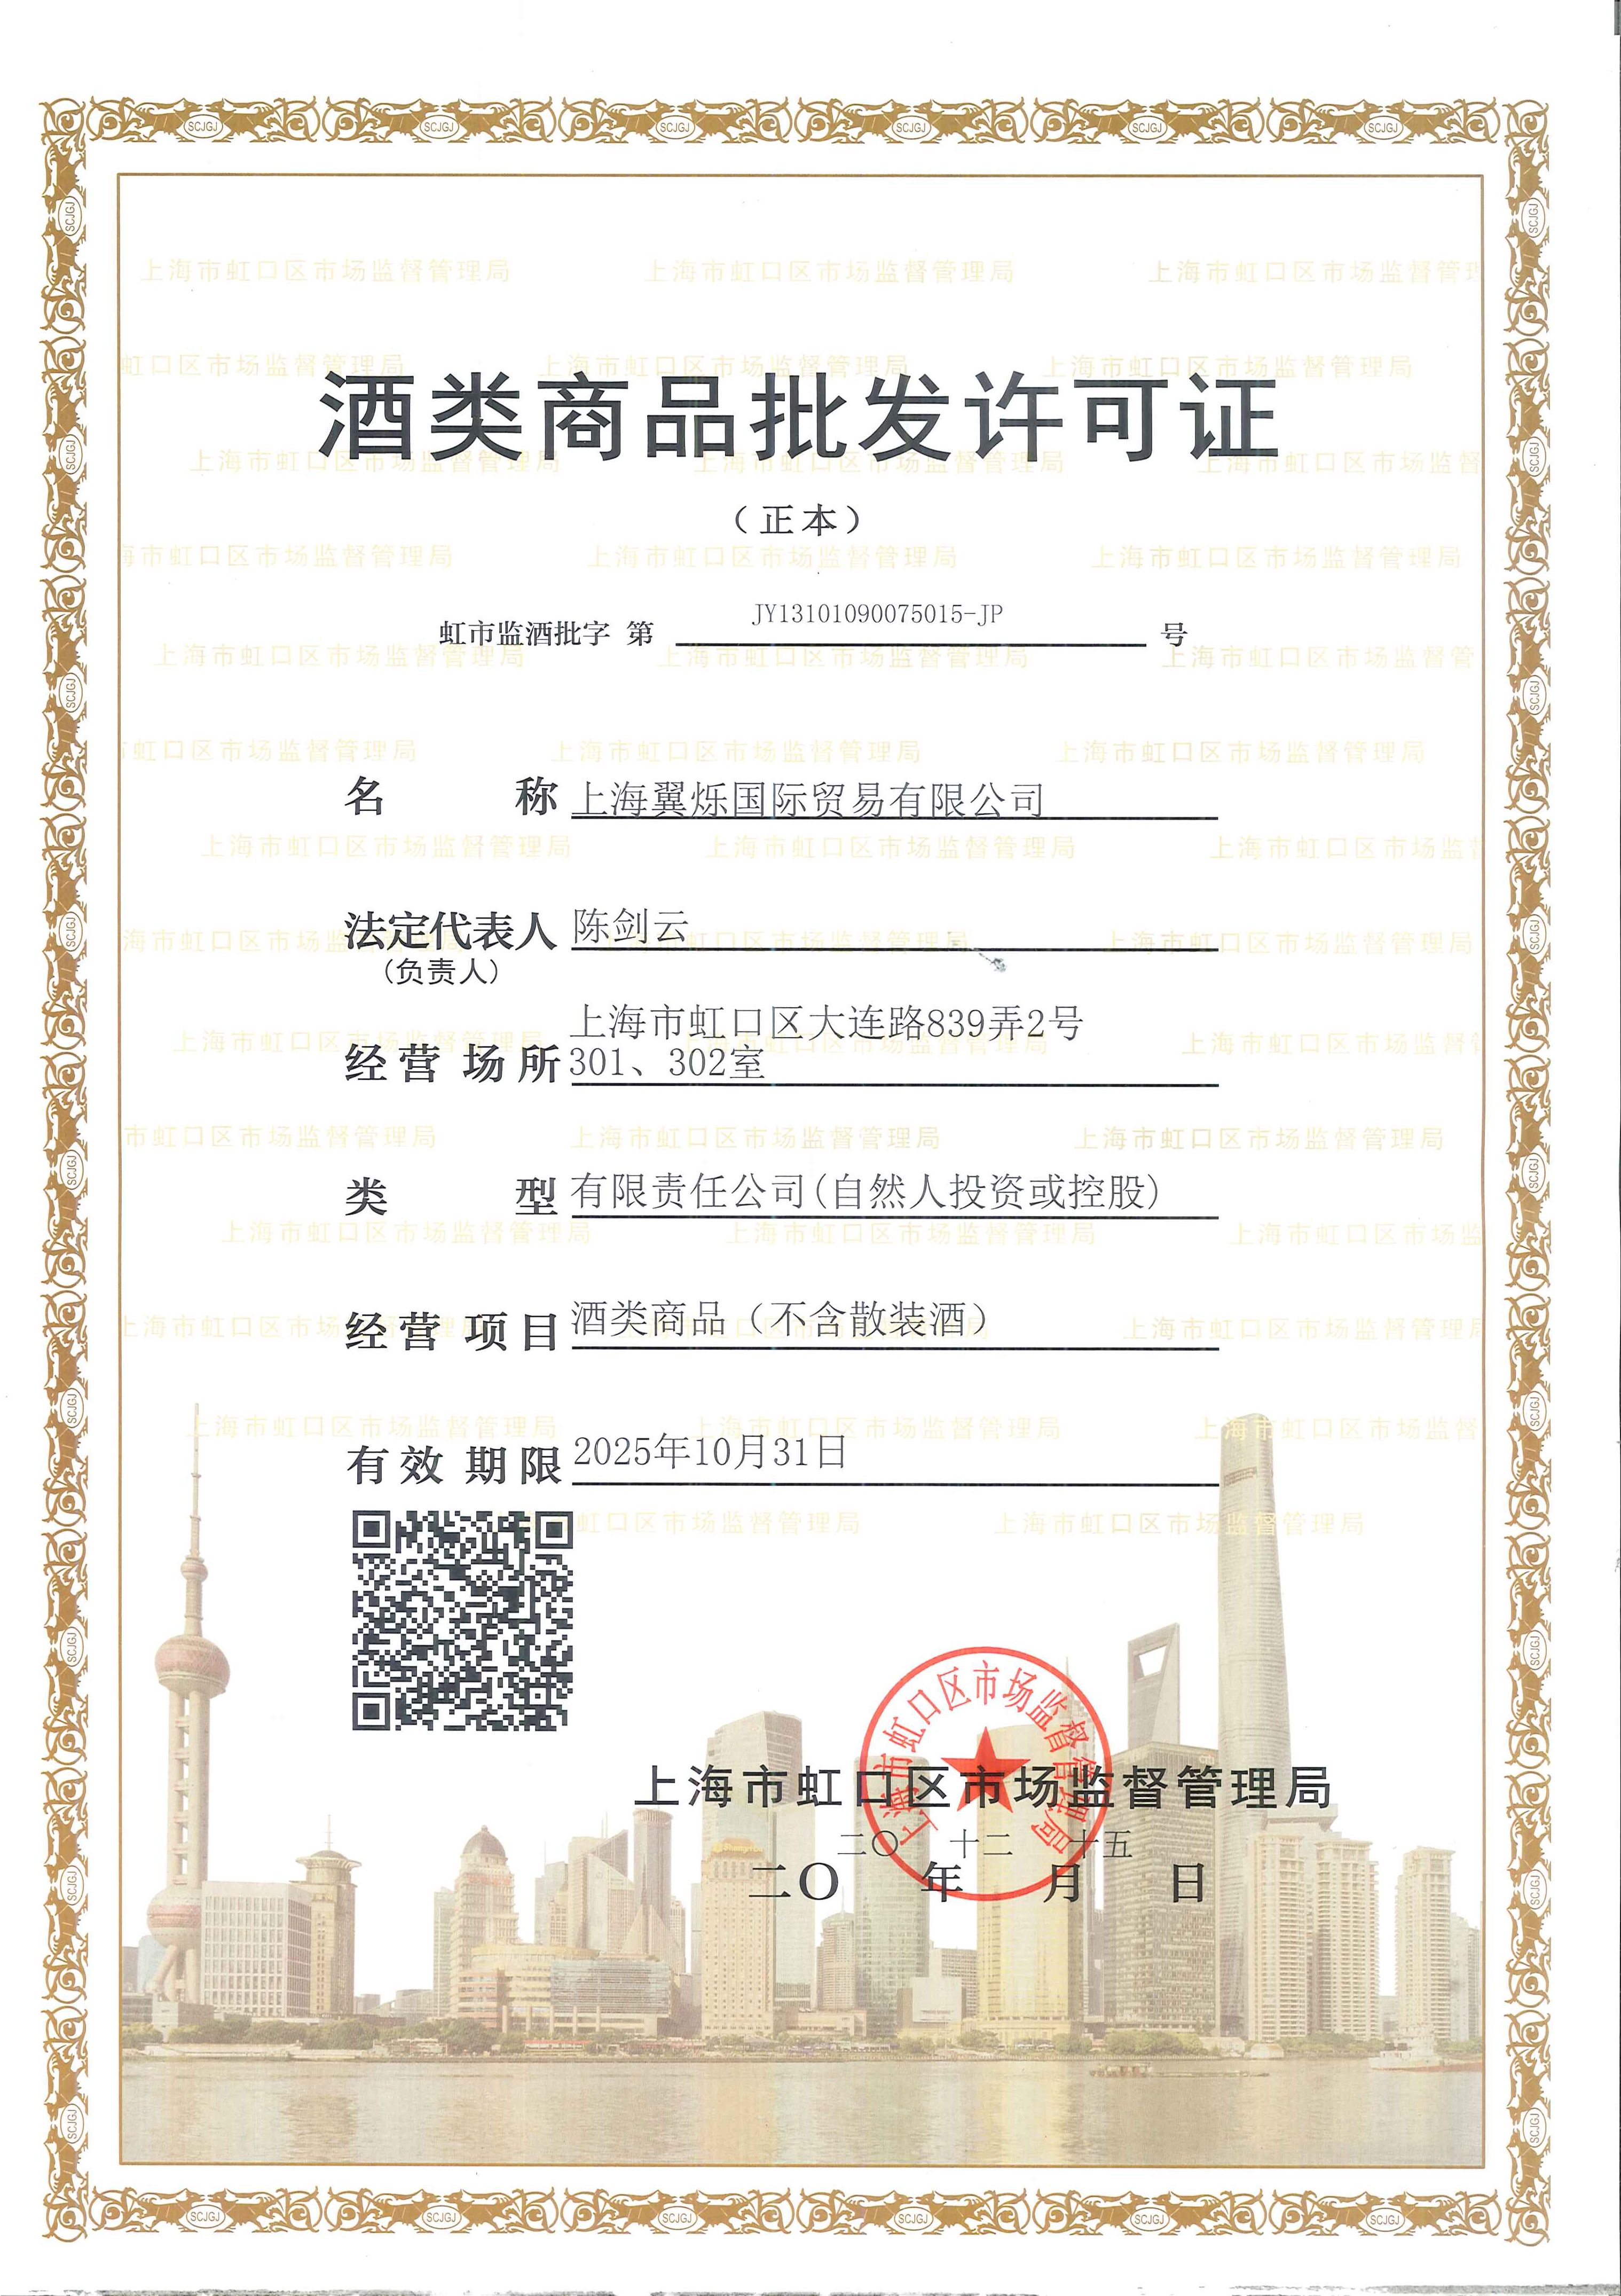 上海翼烁国际贸易有限公司获得酒类证书